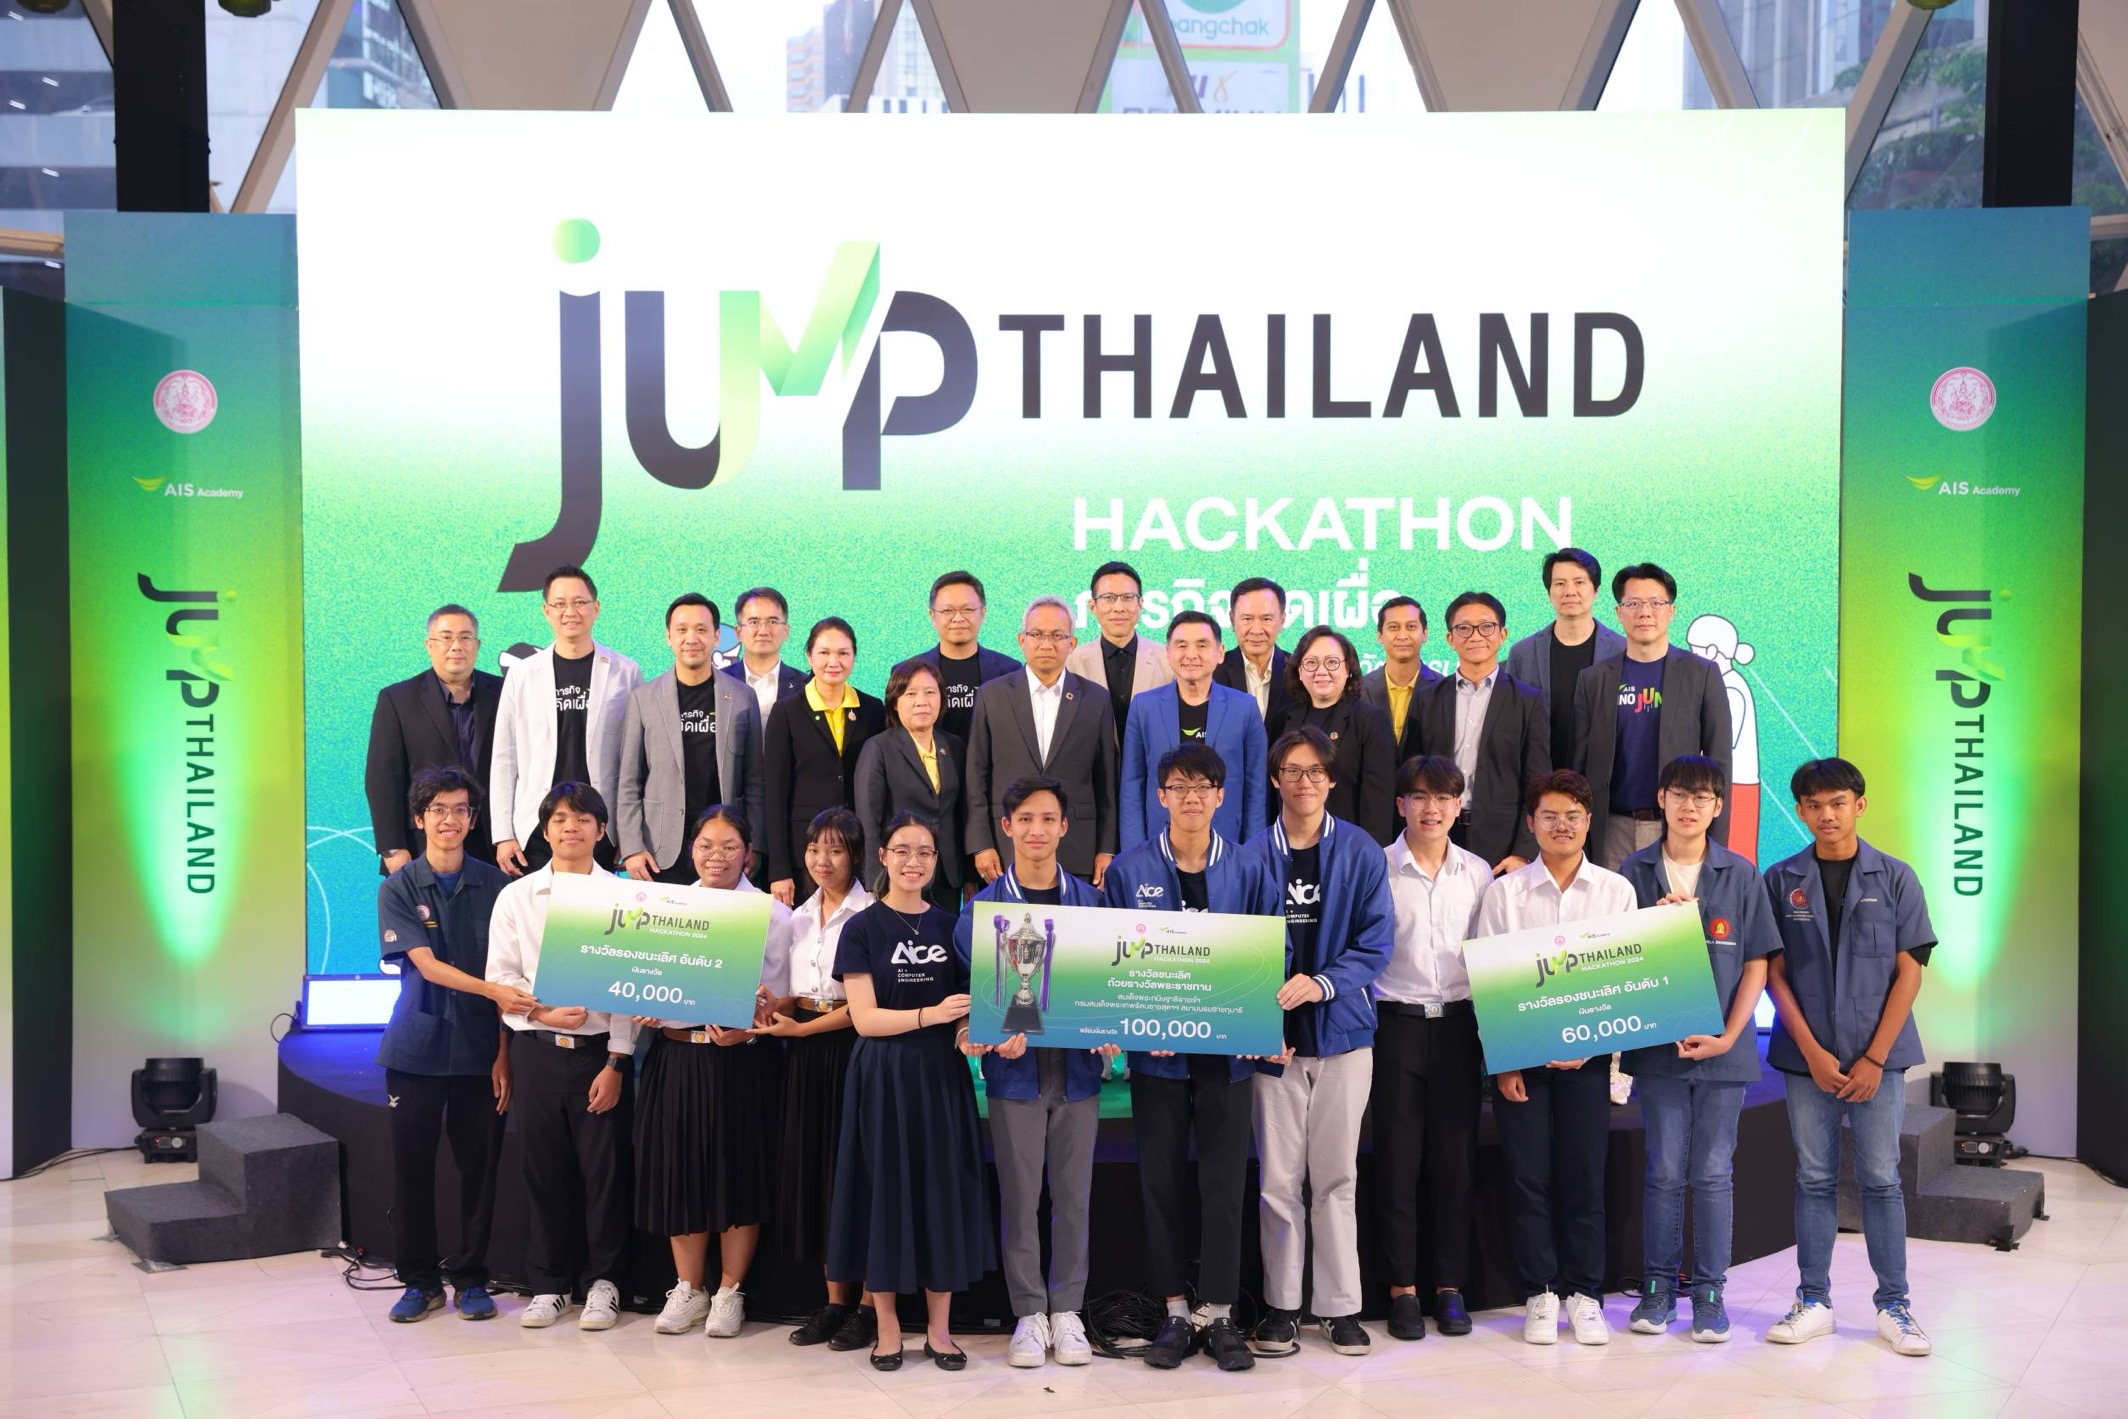 AIS eSports x Dutch Mill เตรียมเปิดฉากศึกตีป้อมระดับมัธยมที่ยิ่งใหญ่ที่สุดในไทยต่อเนื่องเป็นปีที่ 4 ผนึกภาครัฐ 19 จังหวัด ขยายโอกาสสู่เยาวชนไทย